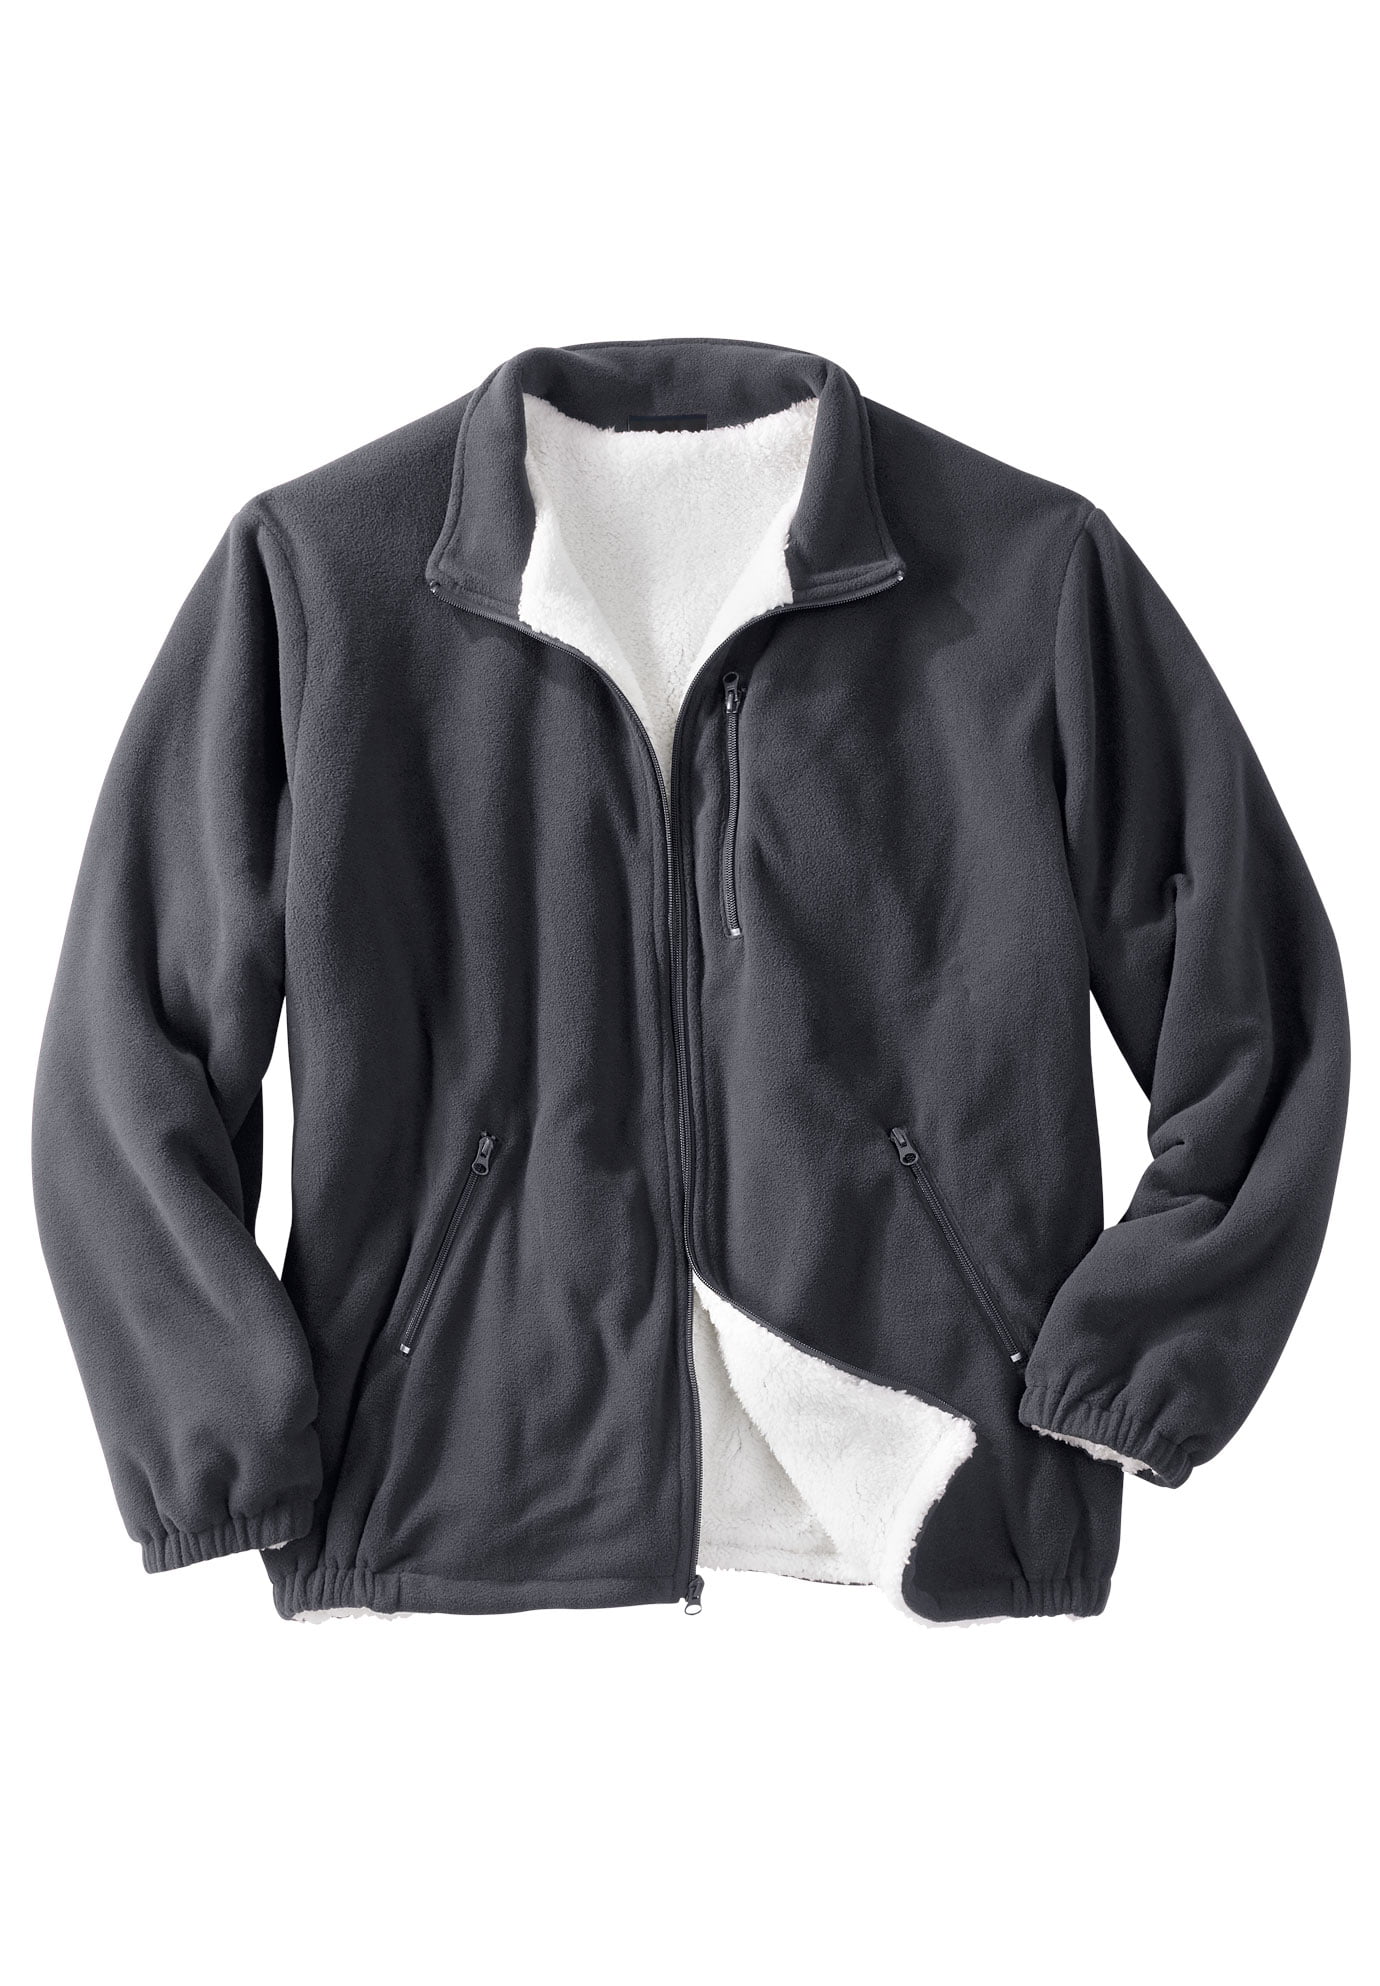 Men's Jacket Fleece Sherpa Lined Explorer with Zip Front Steel Gray Size 6XL 